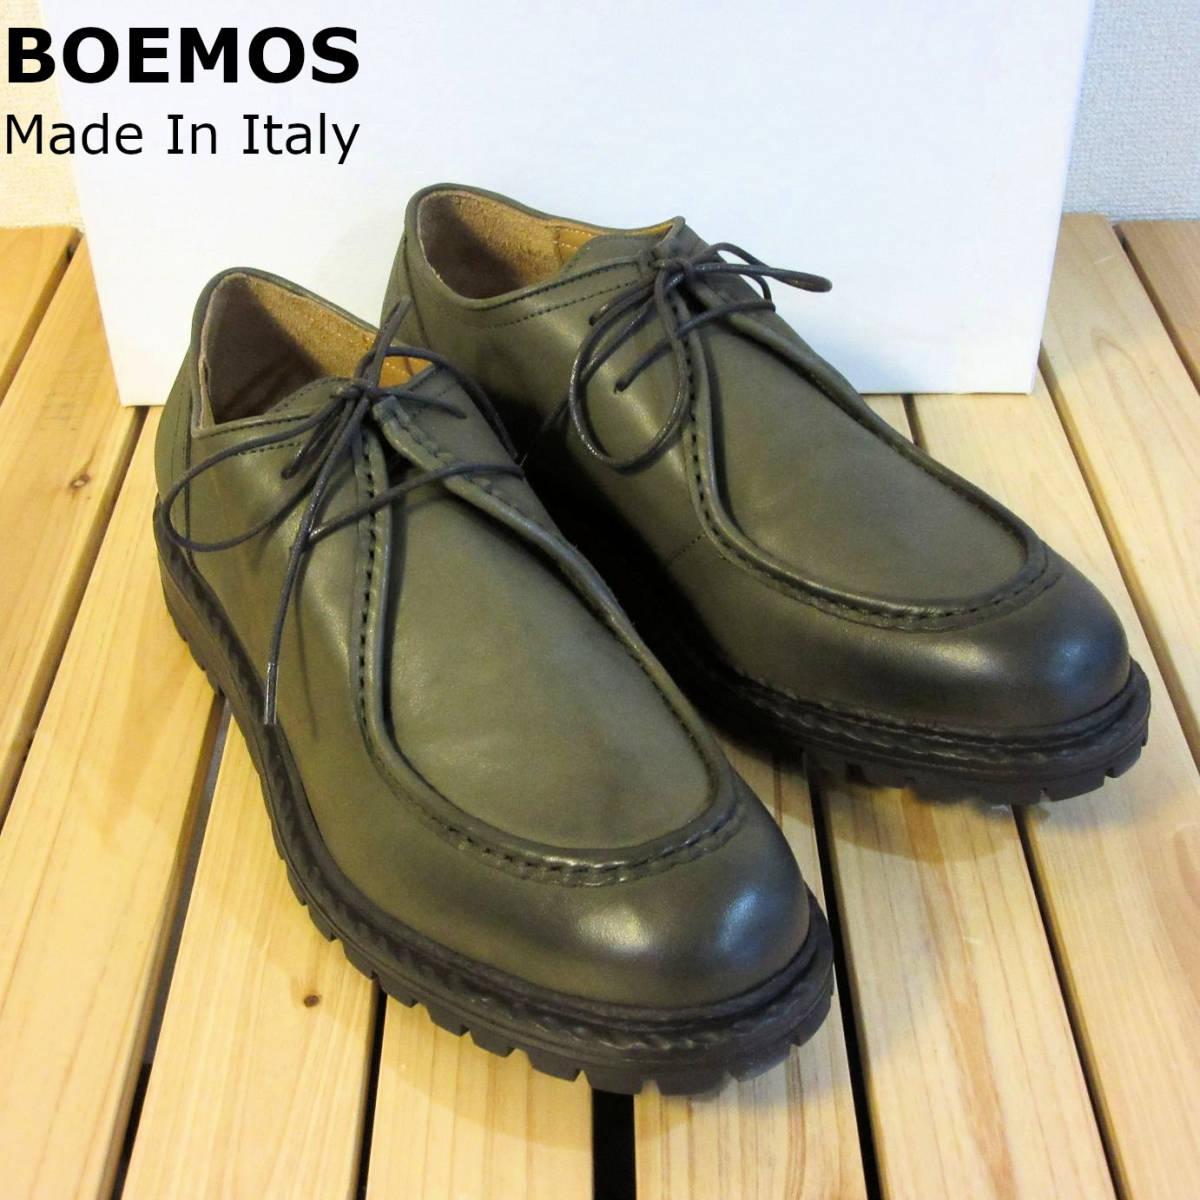 新品 未使用 BOEMOS ボエモス イタリア製 レザーシューズ Uチップ モカシン 革靴 シューズ 緑 オリーブ カーキ メンズ 43 28cm 程度